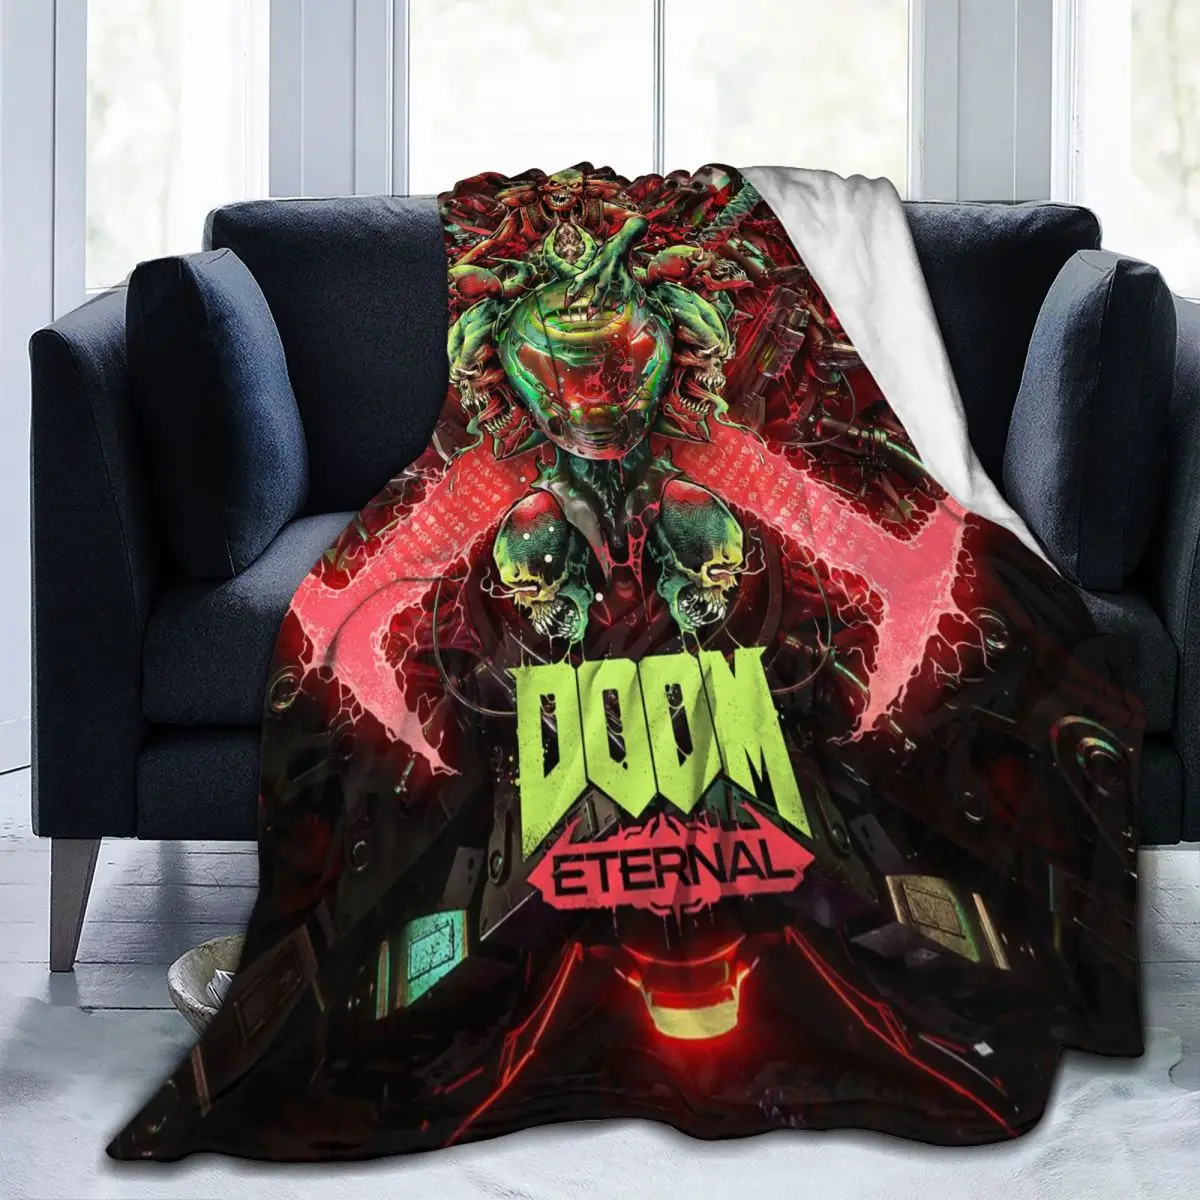 

Manta de forro polar de franela con estampado gráfico para decoración del hogar, juego Popular Doom eterno, regalos para amigos